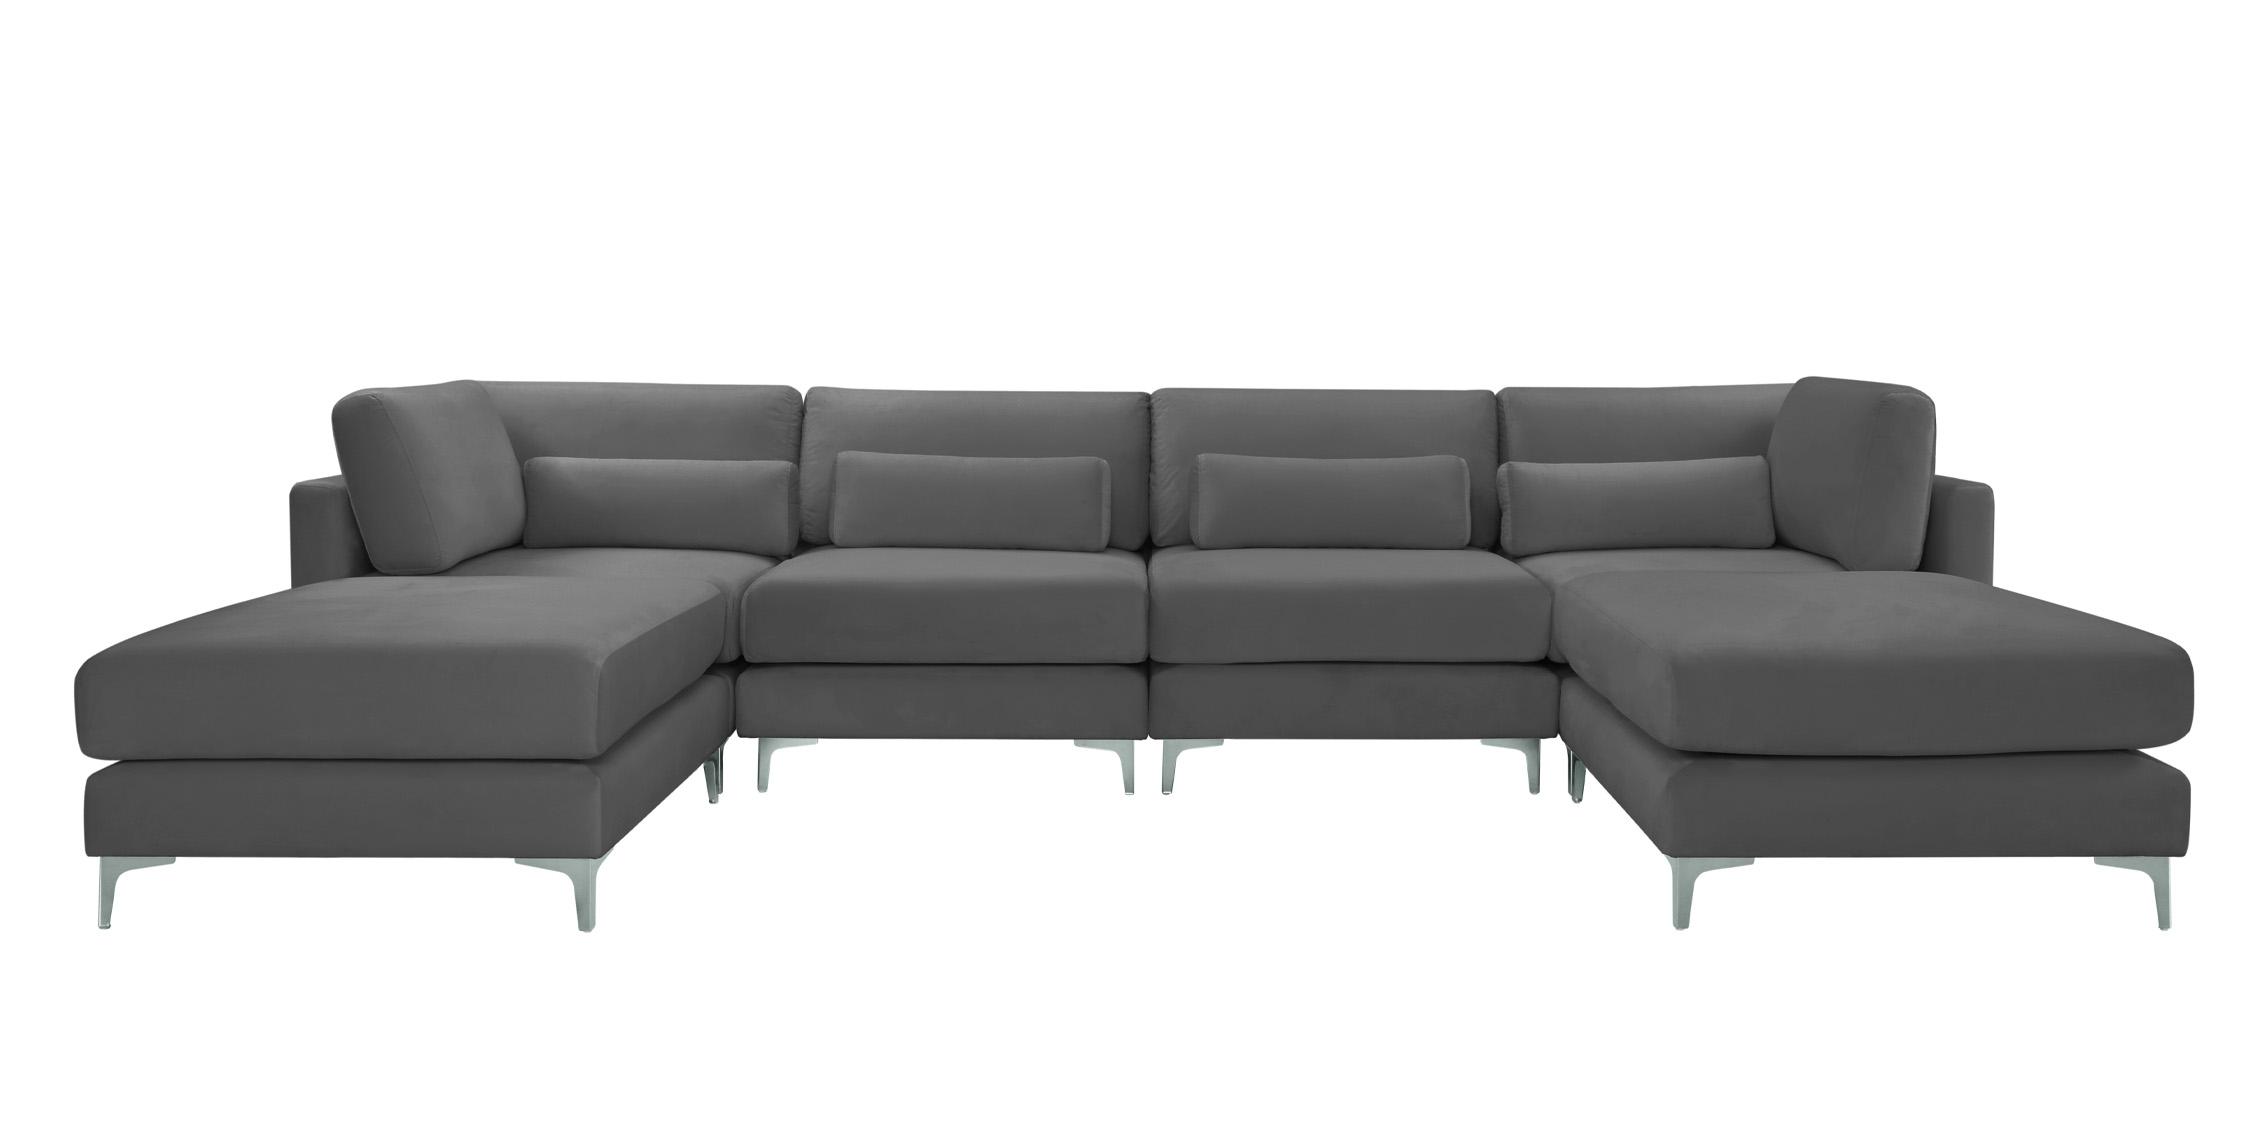 

    
Meridian Furniture JULIA 605Grey-Sec6B Modular Sectional Sofa Gray 605Grey-Sec6B
